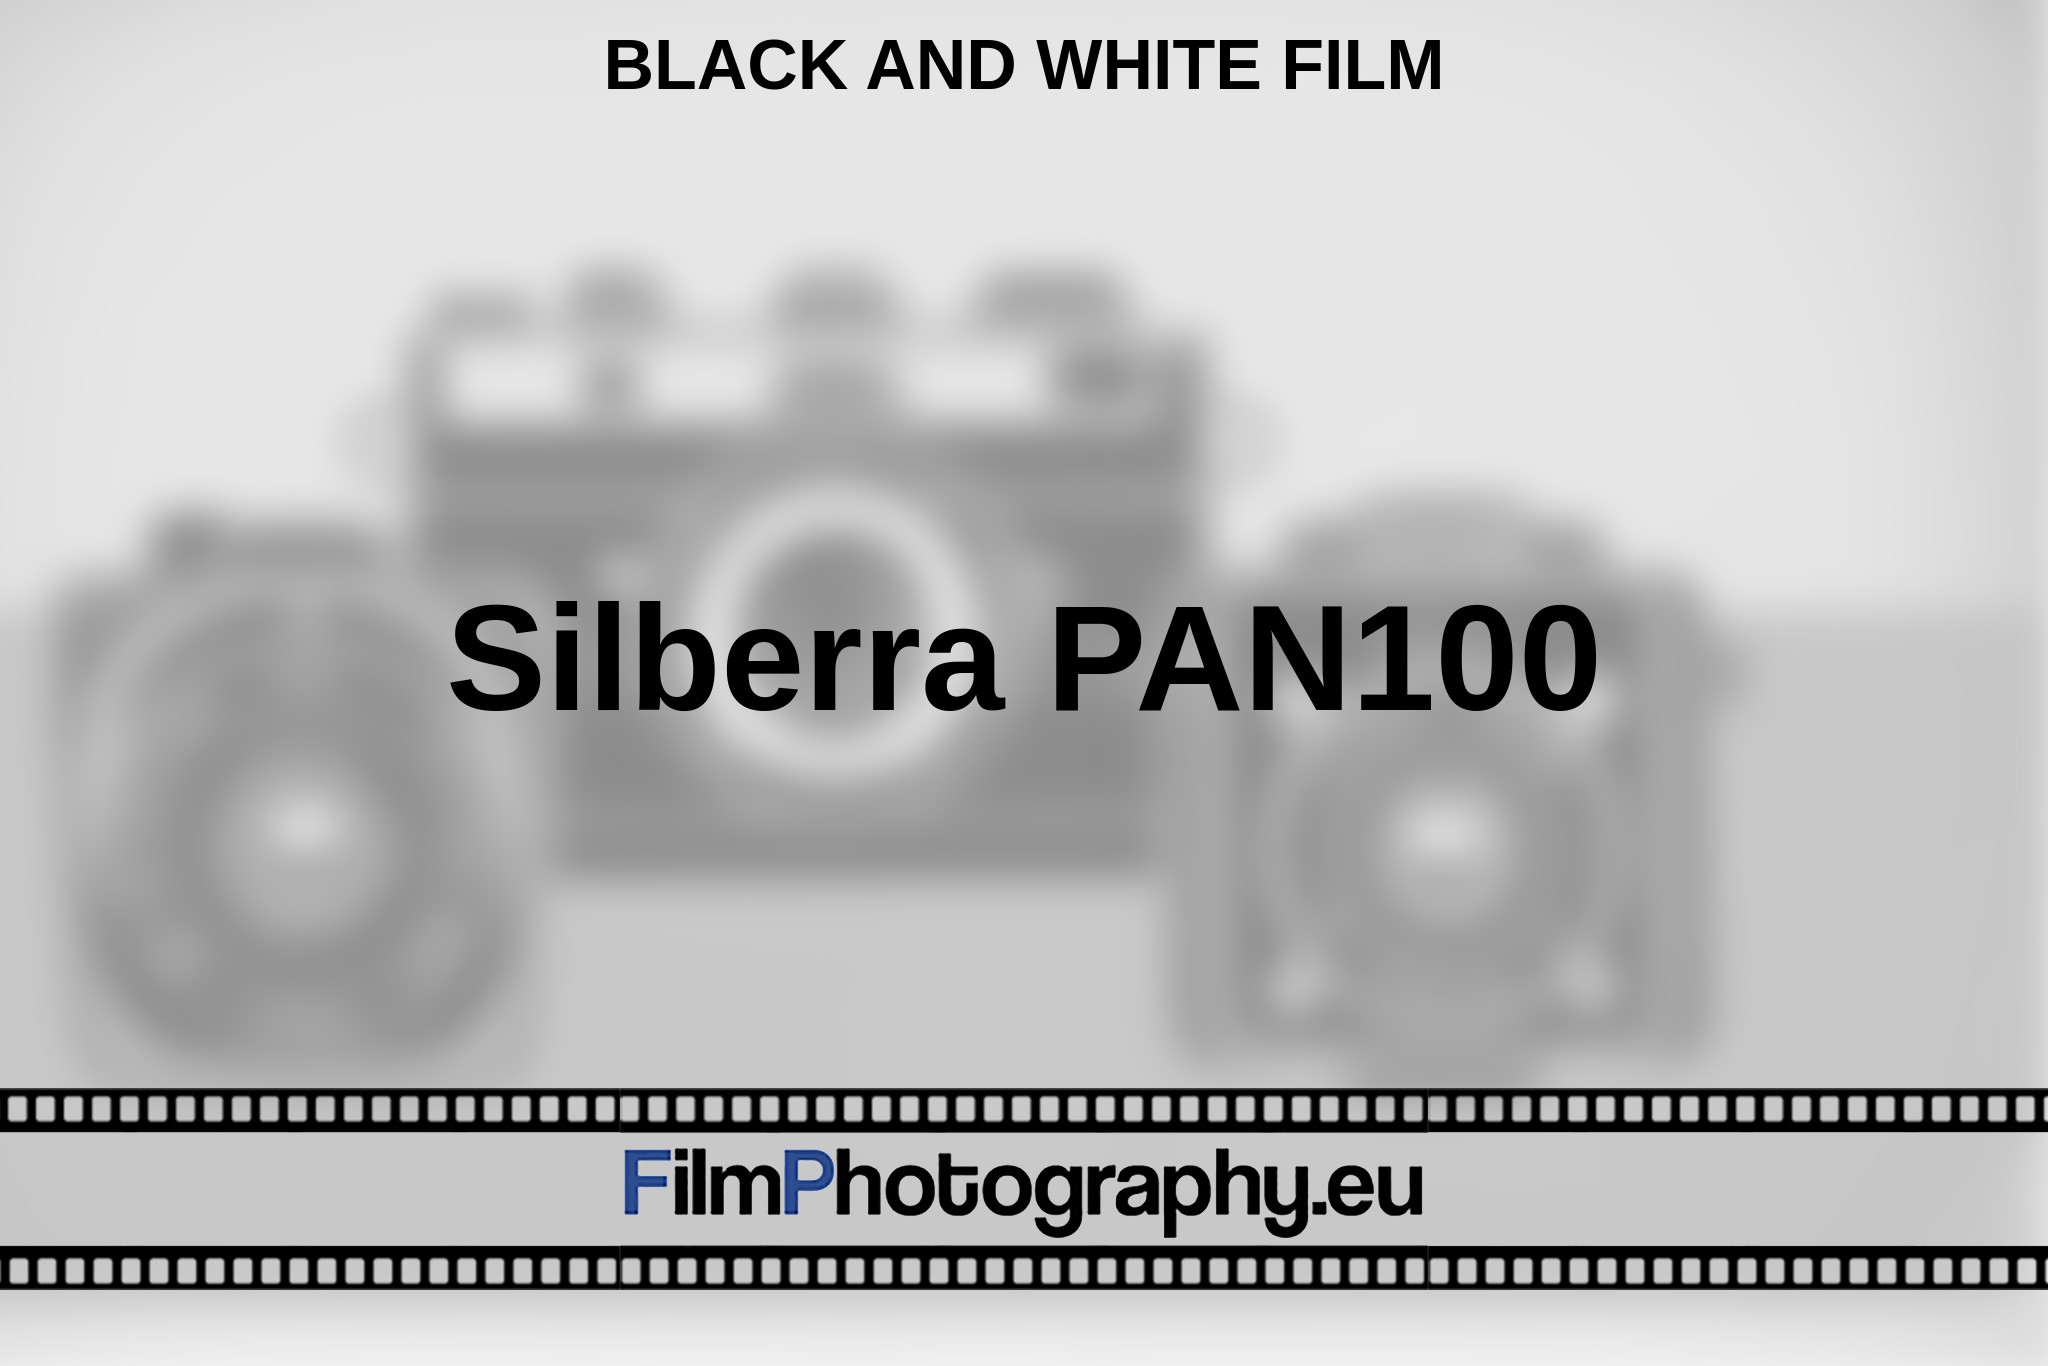 silberra-pan100-black-and-white-film-en-bnv.jpg